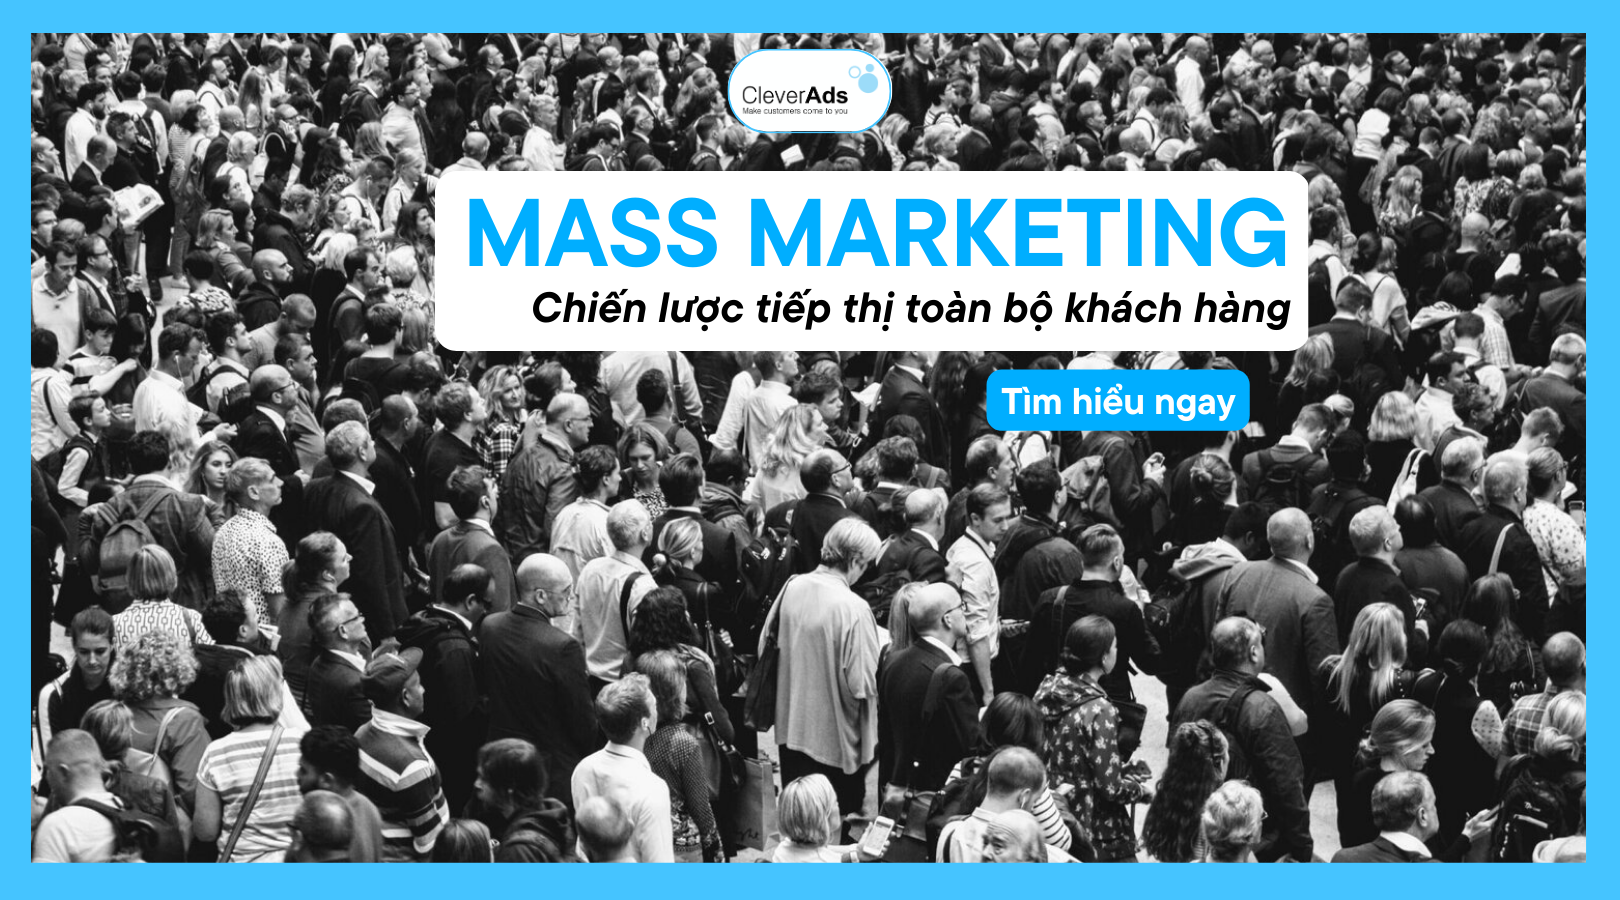 Mass Marketing – Chiến lược tiếp thị toàn bộ khách hàng